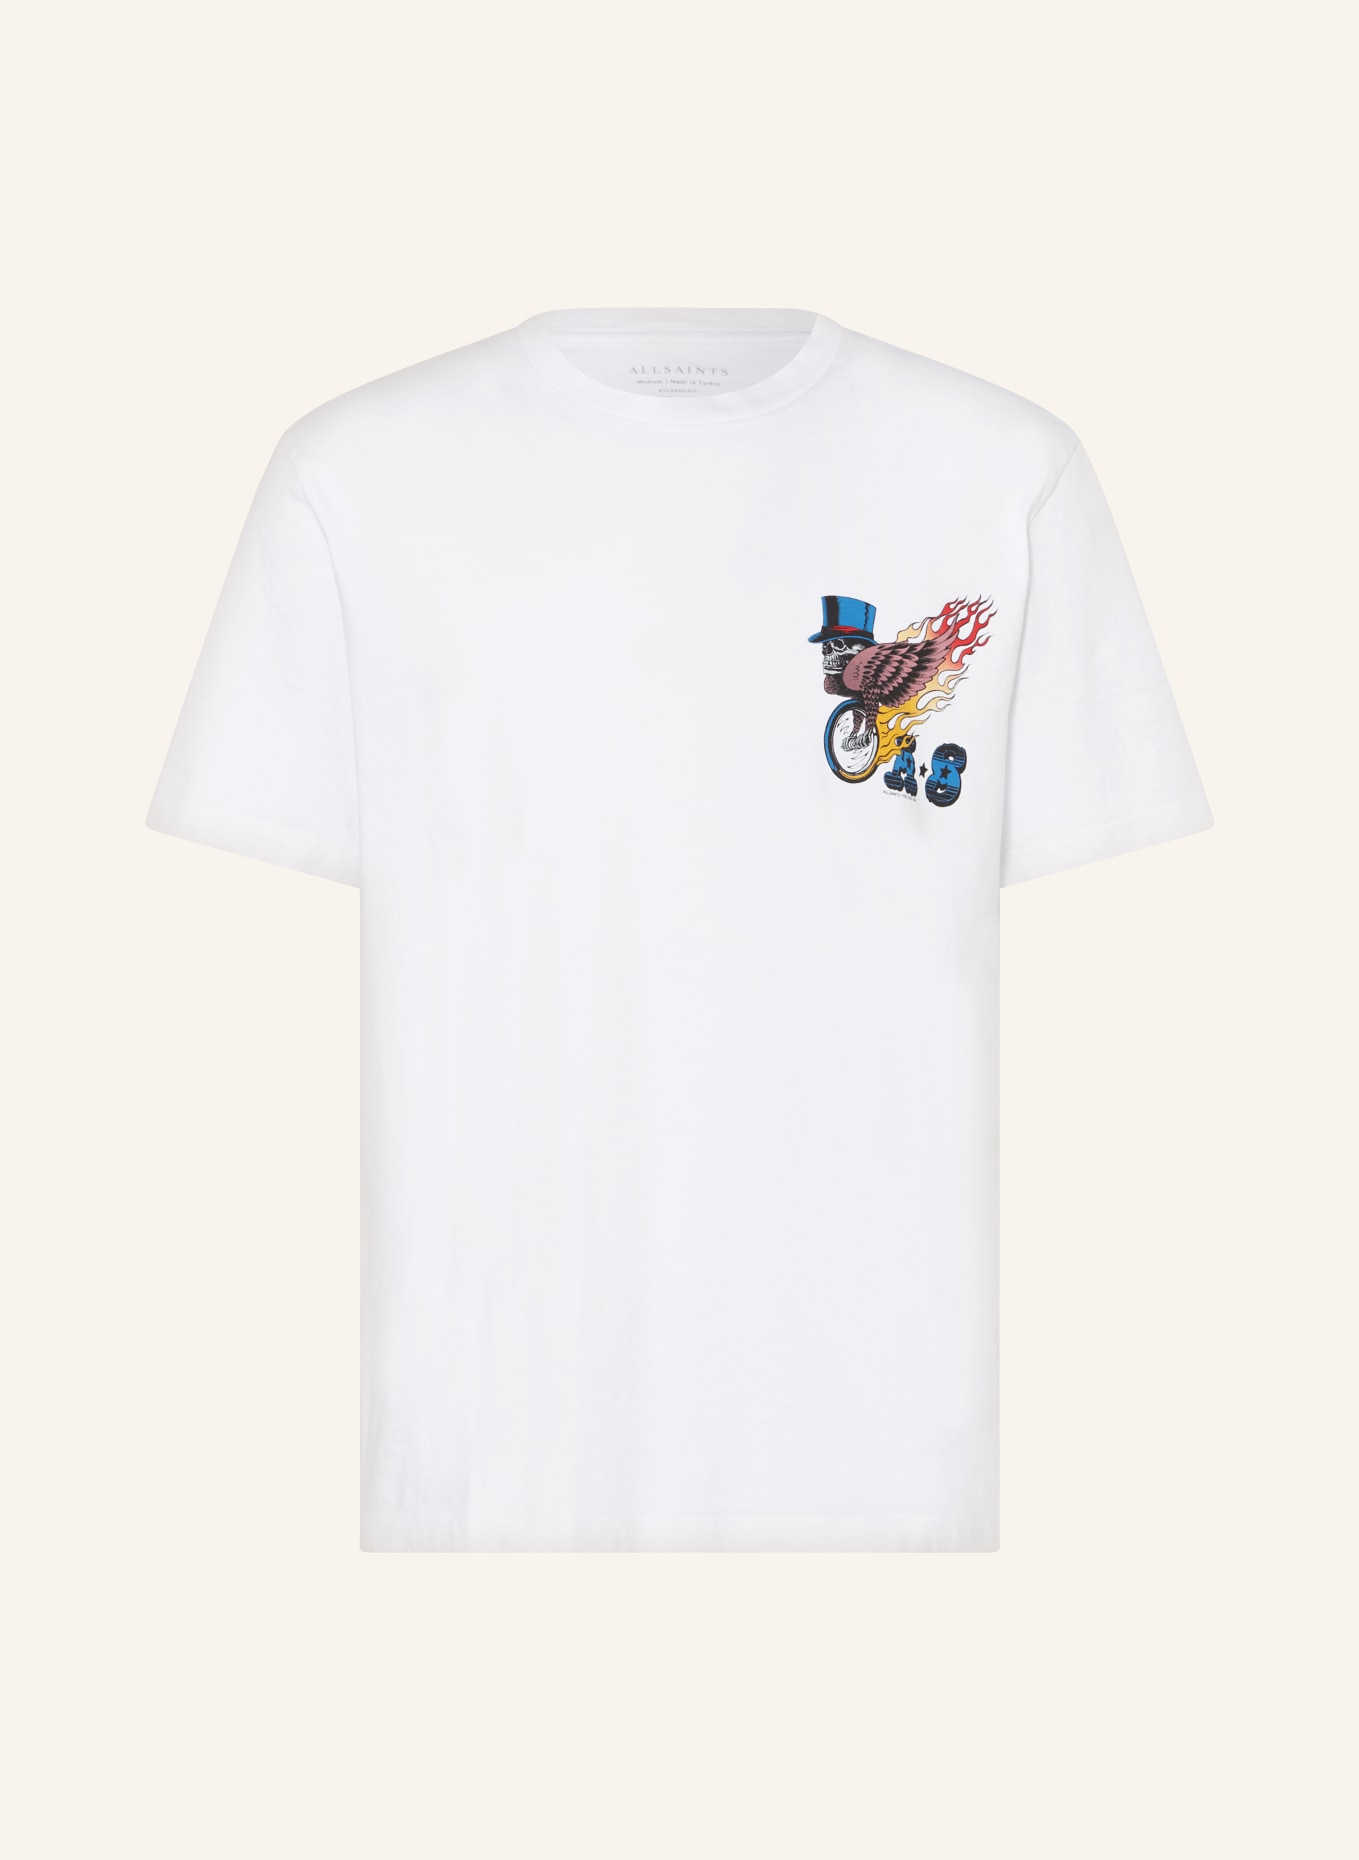 ALLSAINTS T-Shirt ROLLER, Farbe: WEISS (Bild 1)